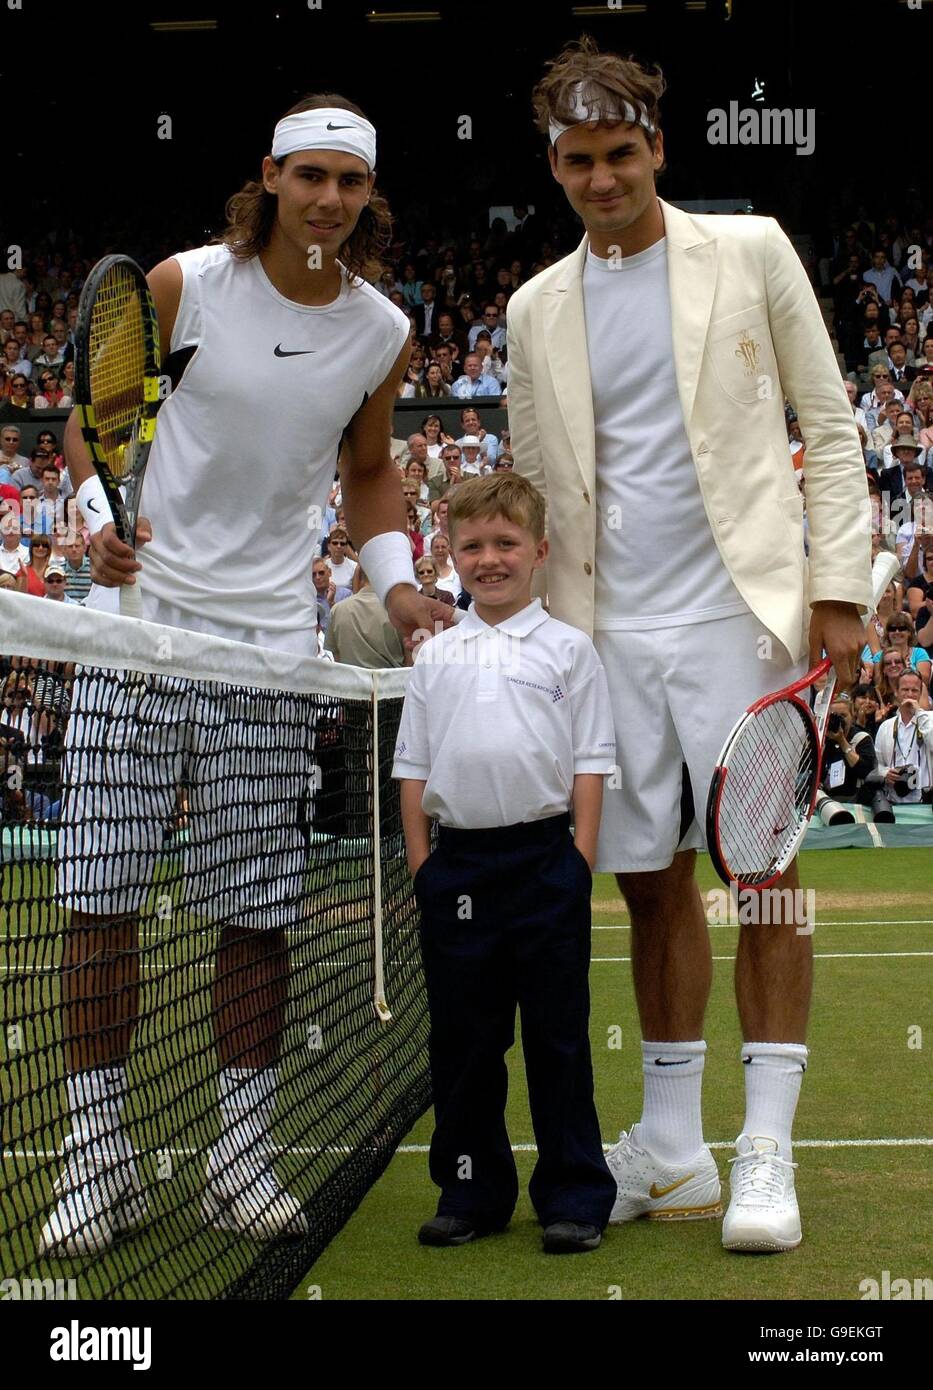 William Caines, sieben Jahre alt, aus Beckenham, Kent, vertritt Cancer Research UK, posiert mit dem Schweizer Roger Federer (rechts) und dem spanischen Rafael Nadal (links), nachdem er den Münzwurf vor dem Finale der Männer-Singles bei den All England Lawn Tennis Championships in Wimbledon gemacht hat. Stockfoto